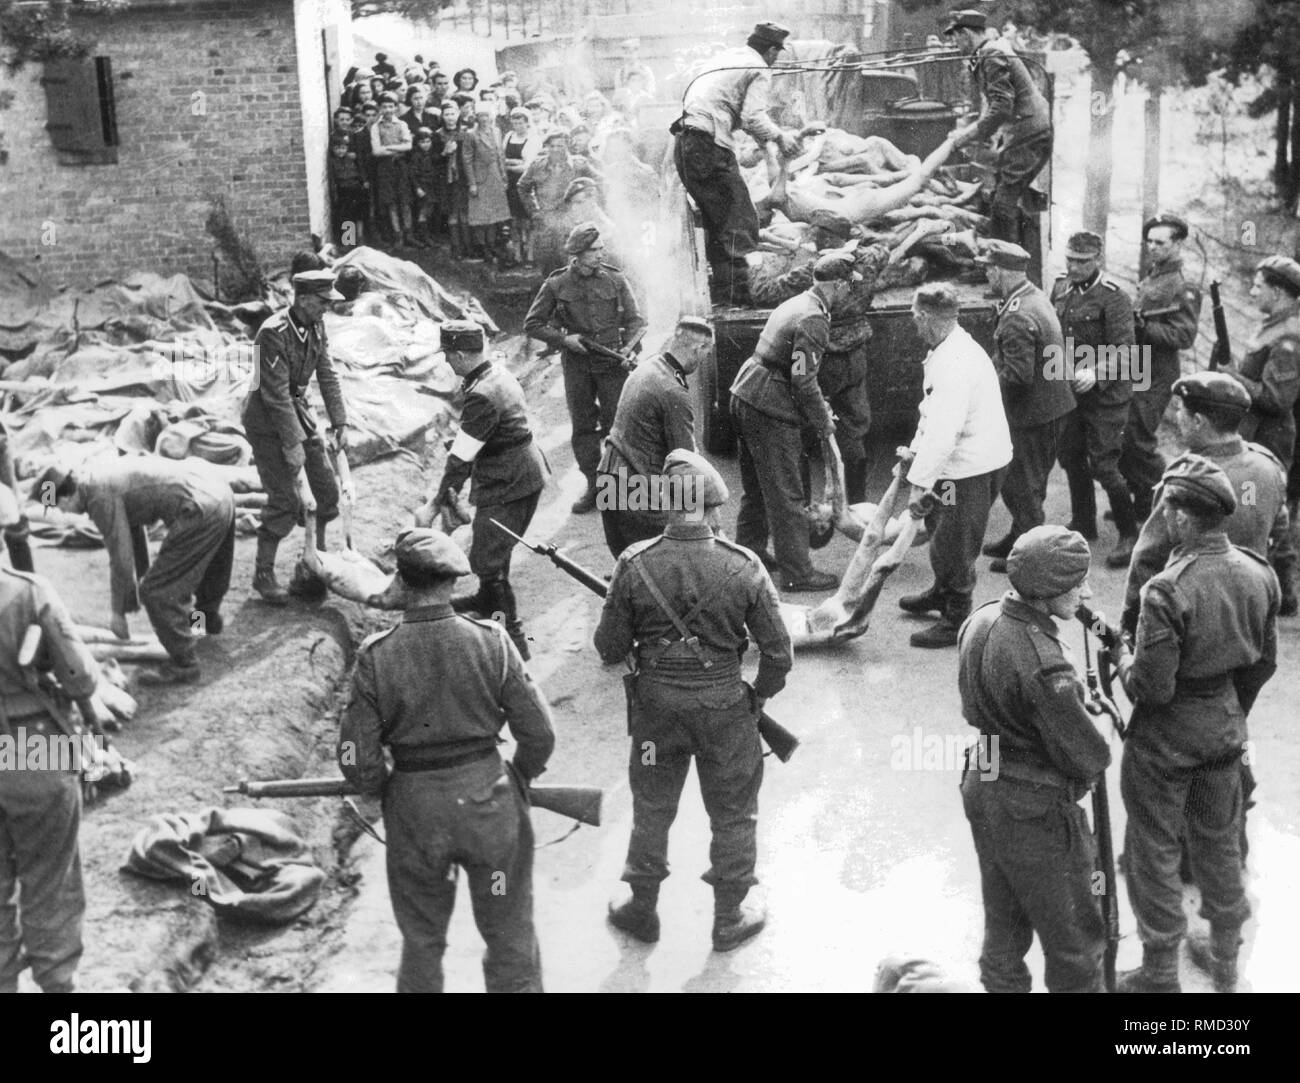 Sous la supervision de la Guards, les membres de la SS du camp de concentration de Bergen-Belsen transporter les corps des prisonniers assassinés pour les fosses communes. Enfants survivants à l'arrière-plan. Banque D'Images